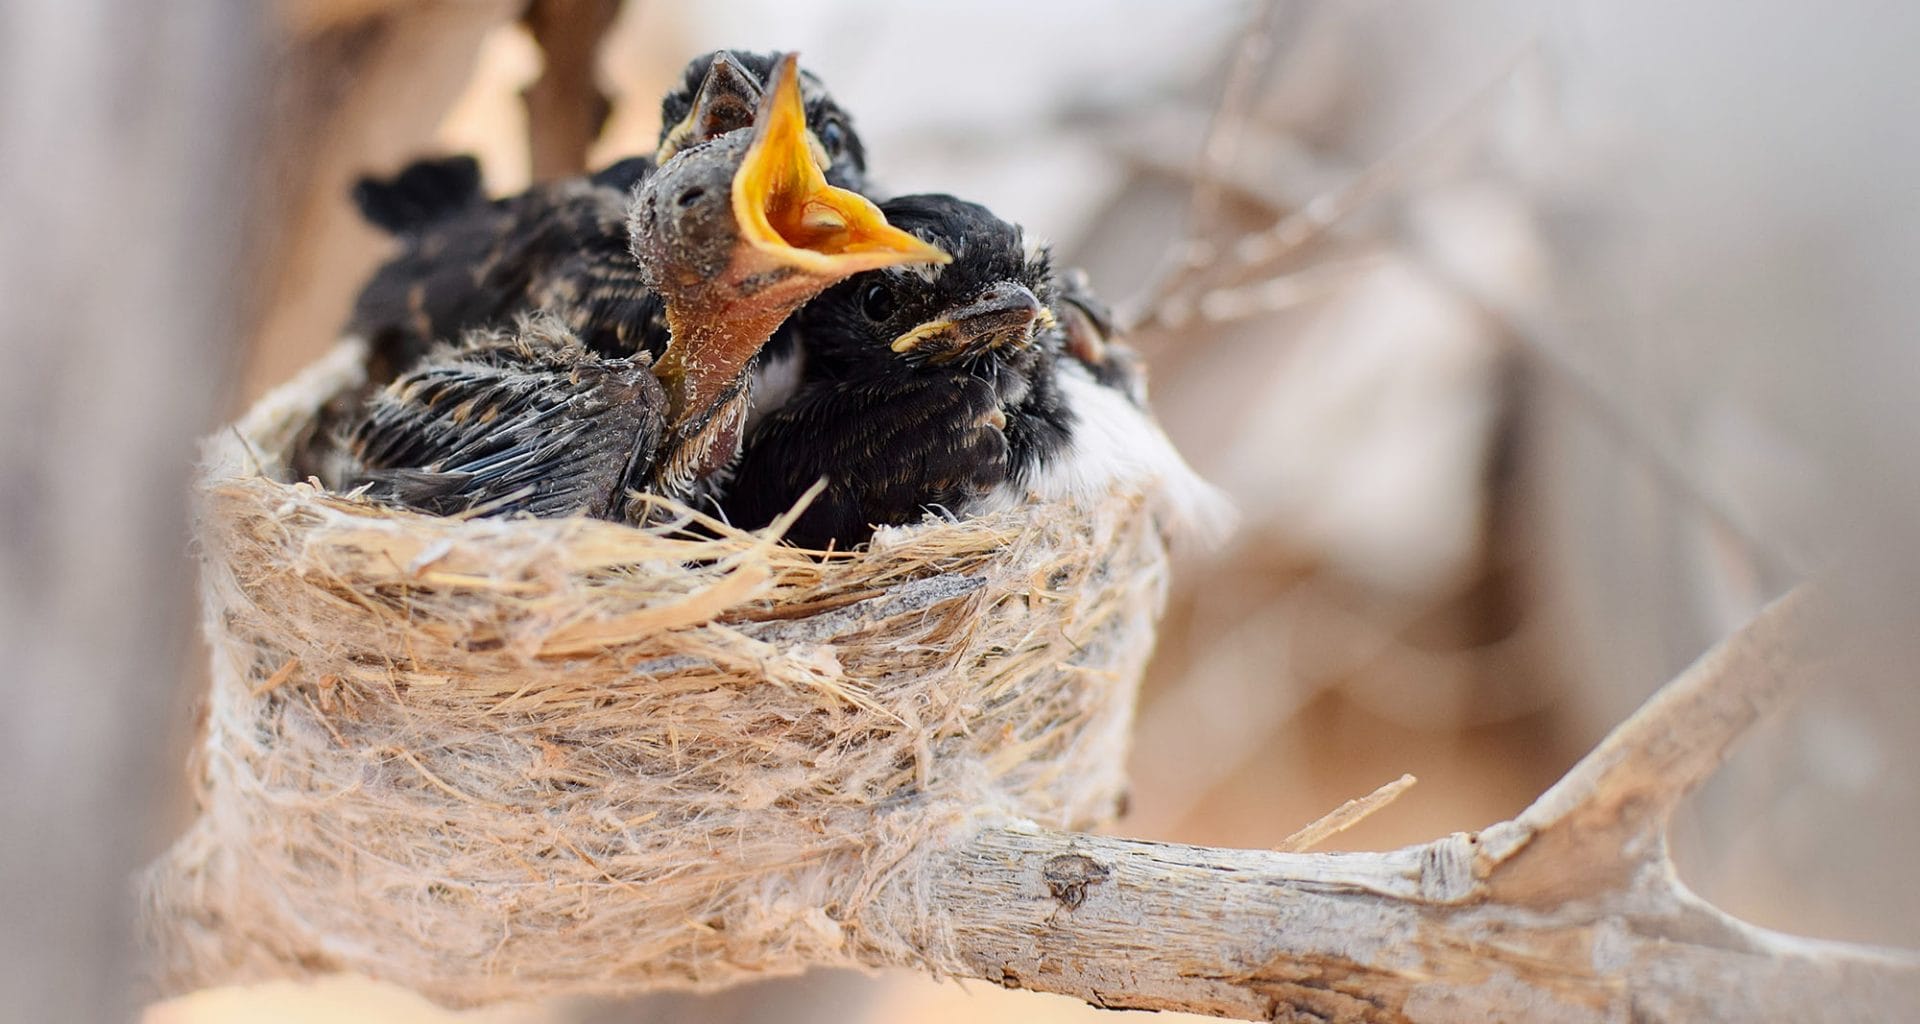 why do baby birds die in the nest